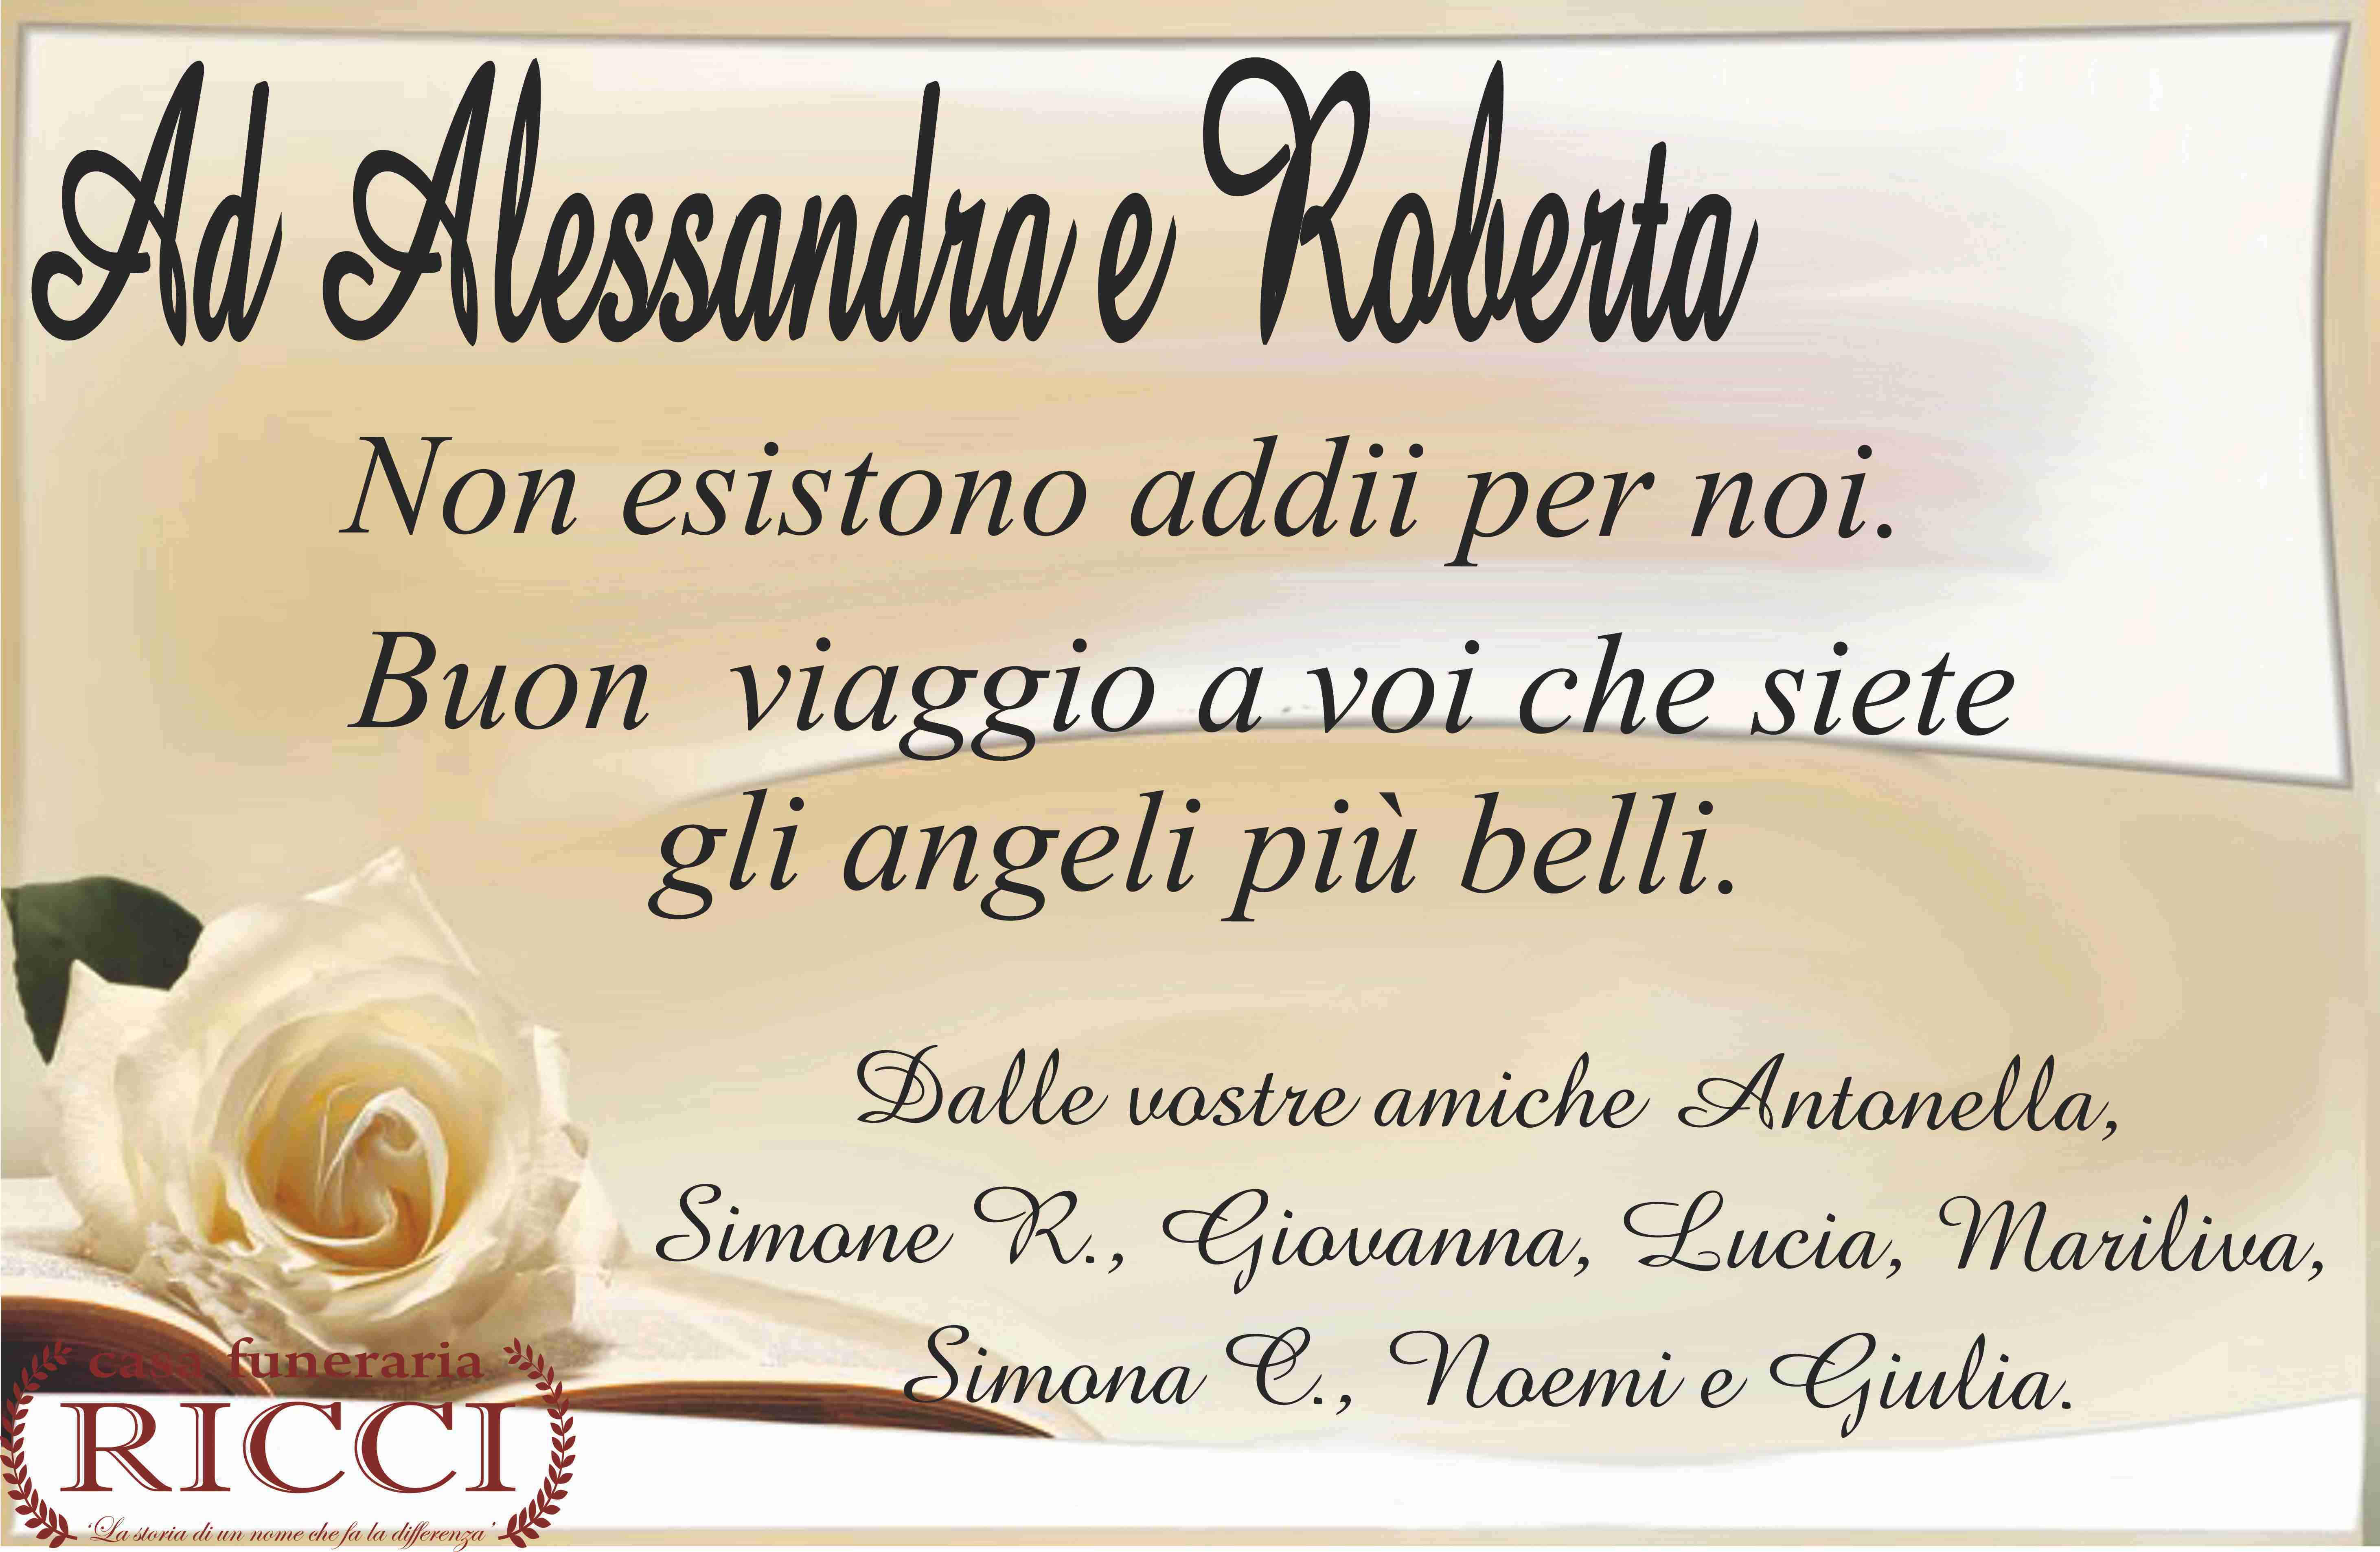 Alessandra Taddeo